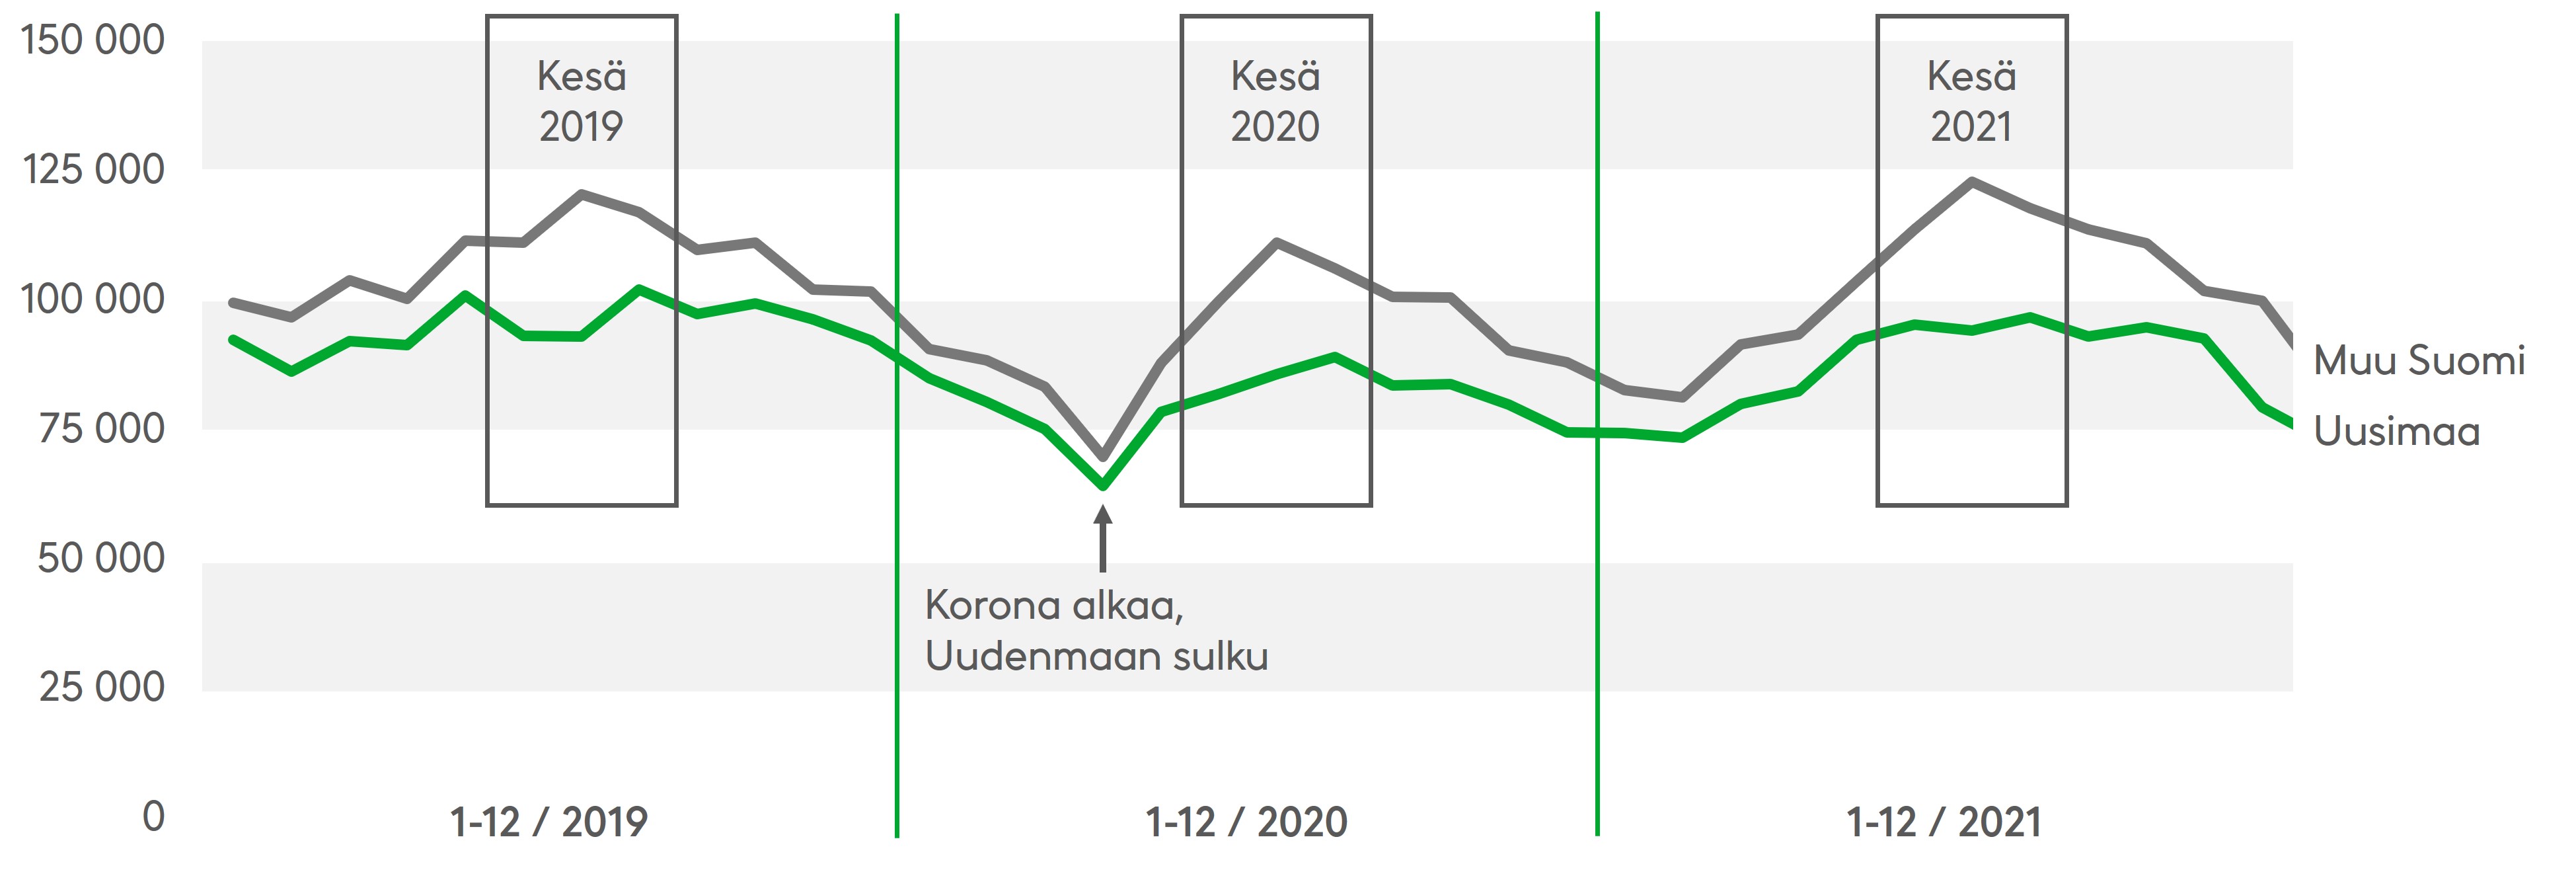 Liikenteen määrä nousee usein muualla Suomessa ja laskee Uudellamaalla kesäkuukausina. Viime kesänä liikenteen määrä lisääntyi edellisvuodesta. Lähde: Fintraffic 